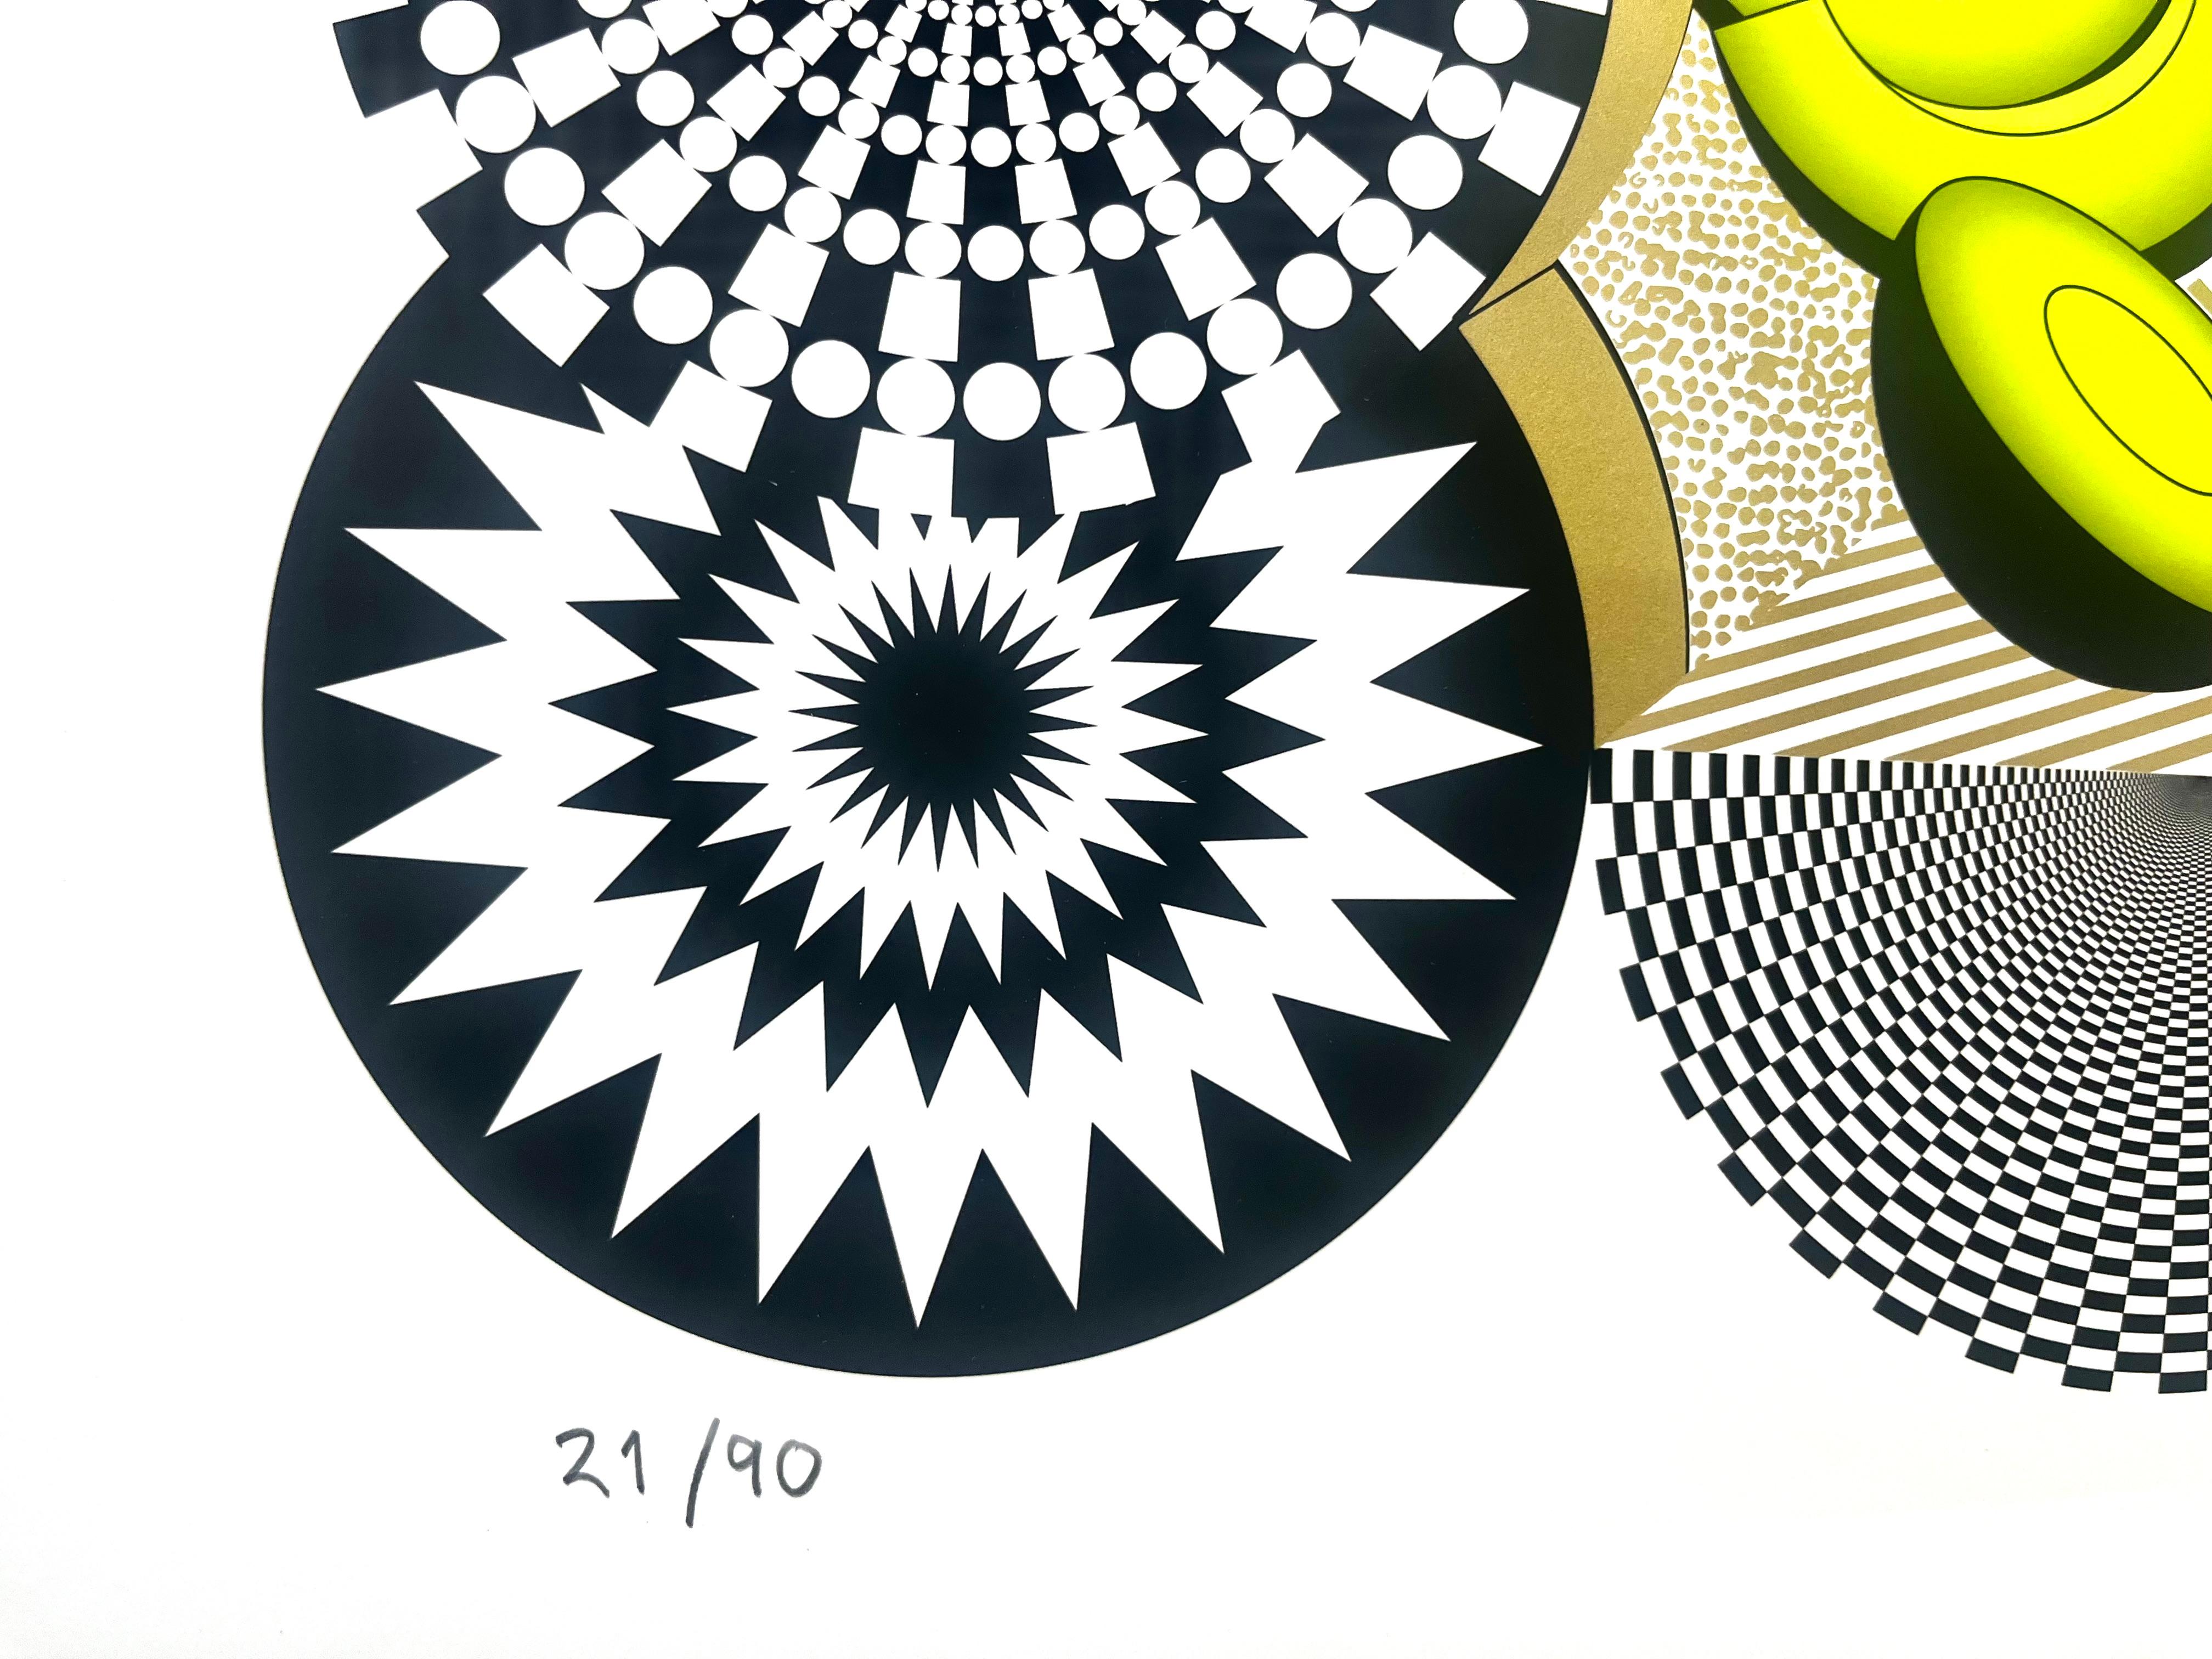 Un dimanche à Avocadoland - paysage géométrique, surréaliste, neobarroque - Contemporain Print par Pedro Freideberg